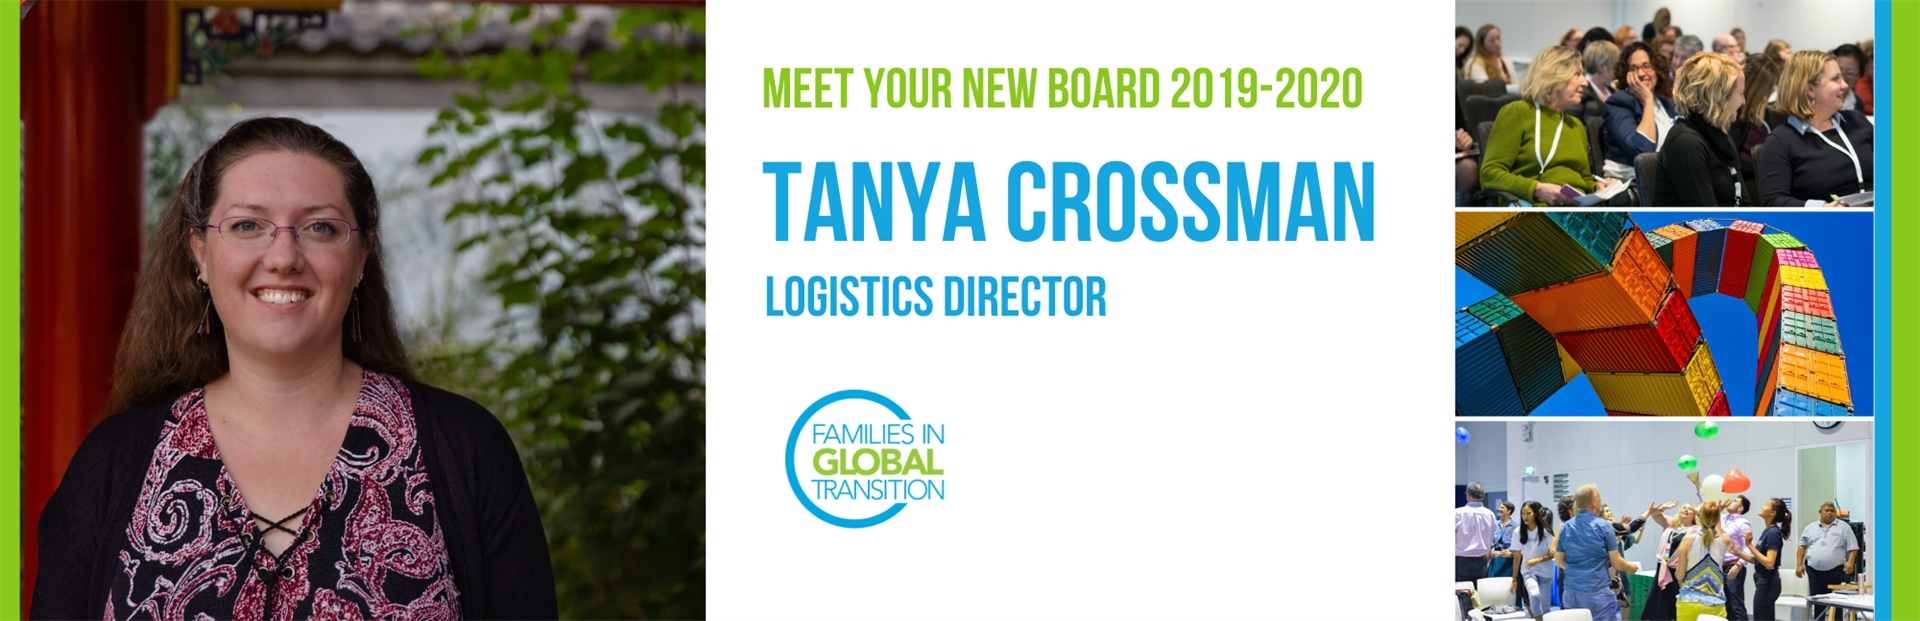 20191227 Tanya Crossman Logistics Director